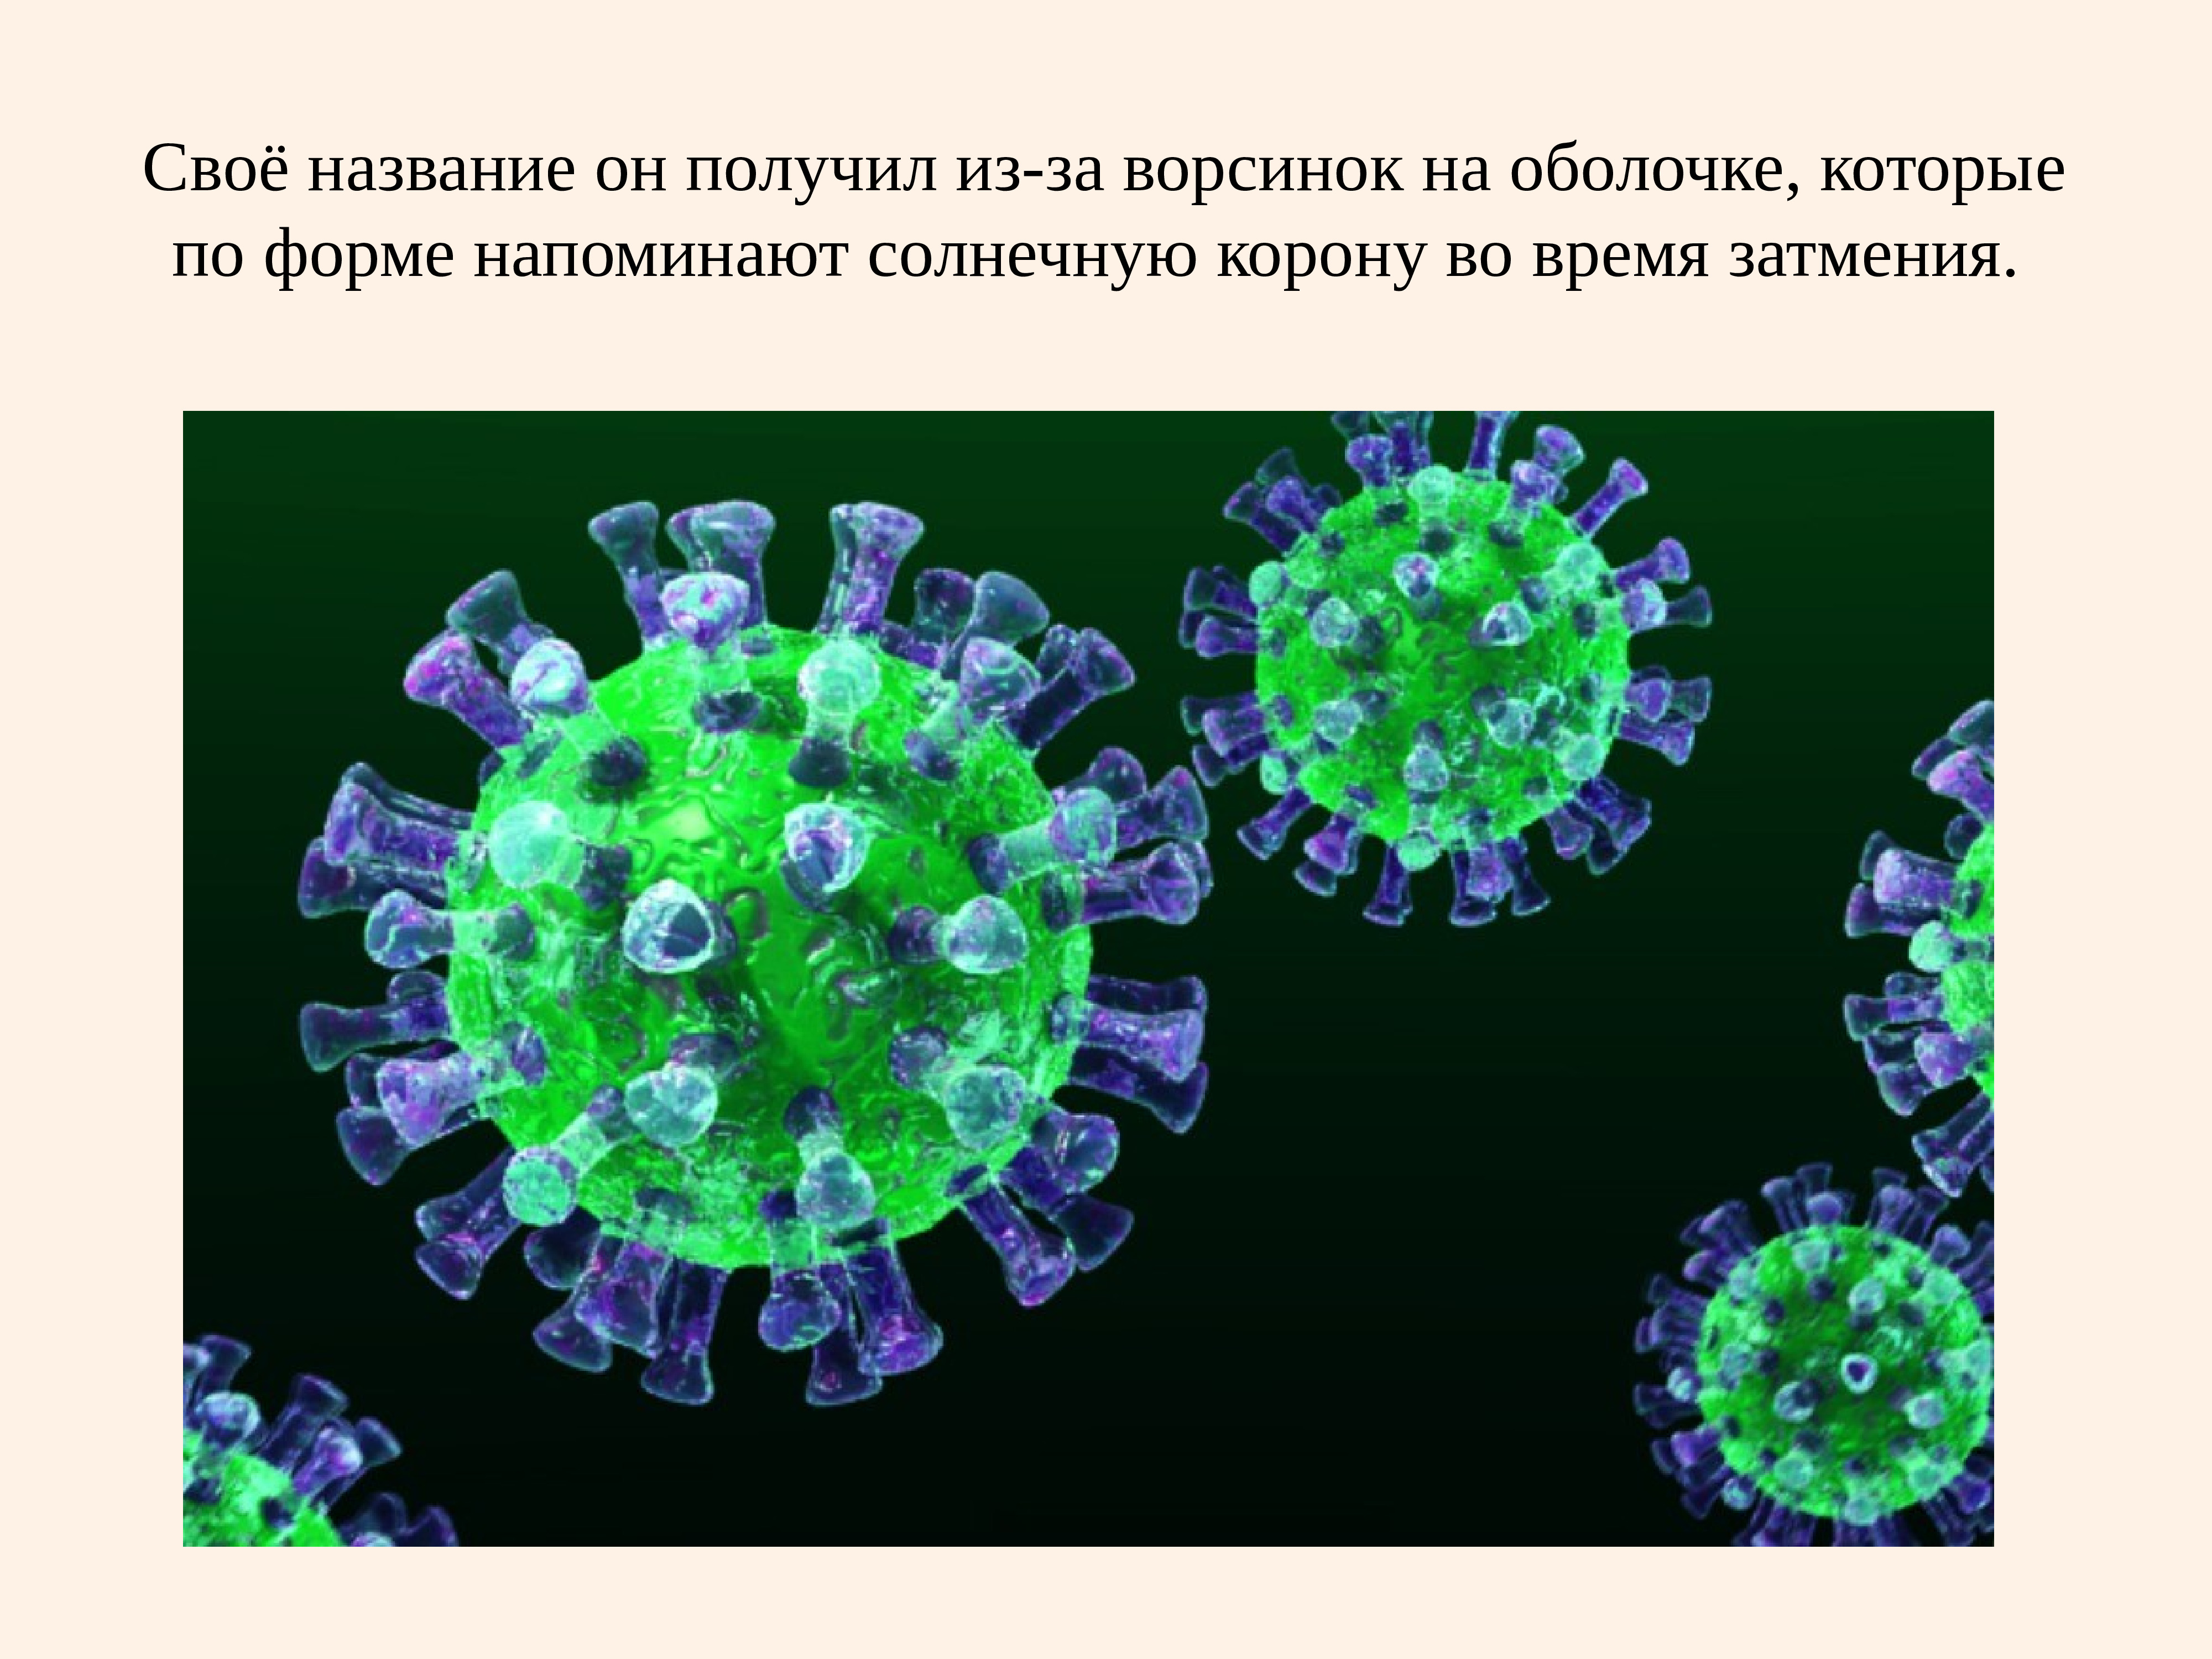 Ученые коронавирусе